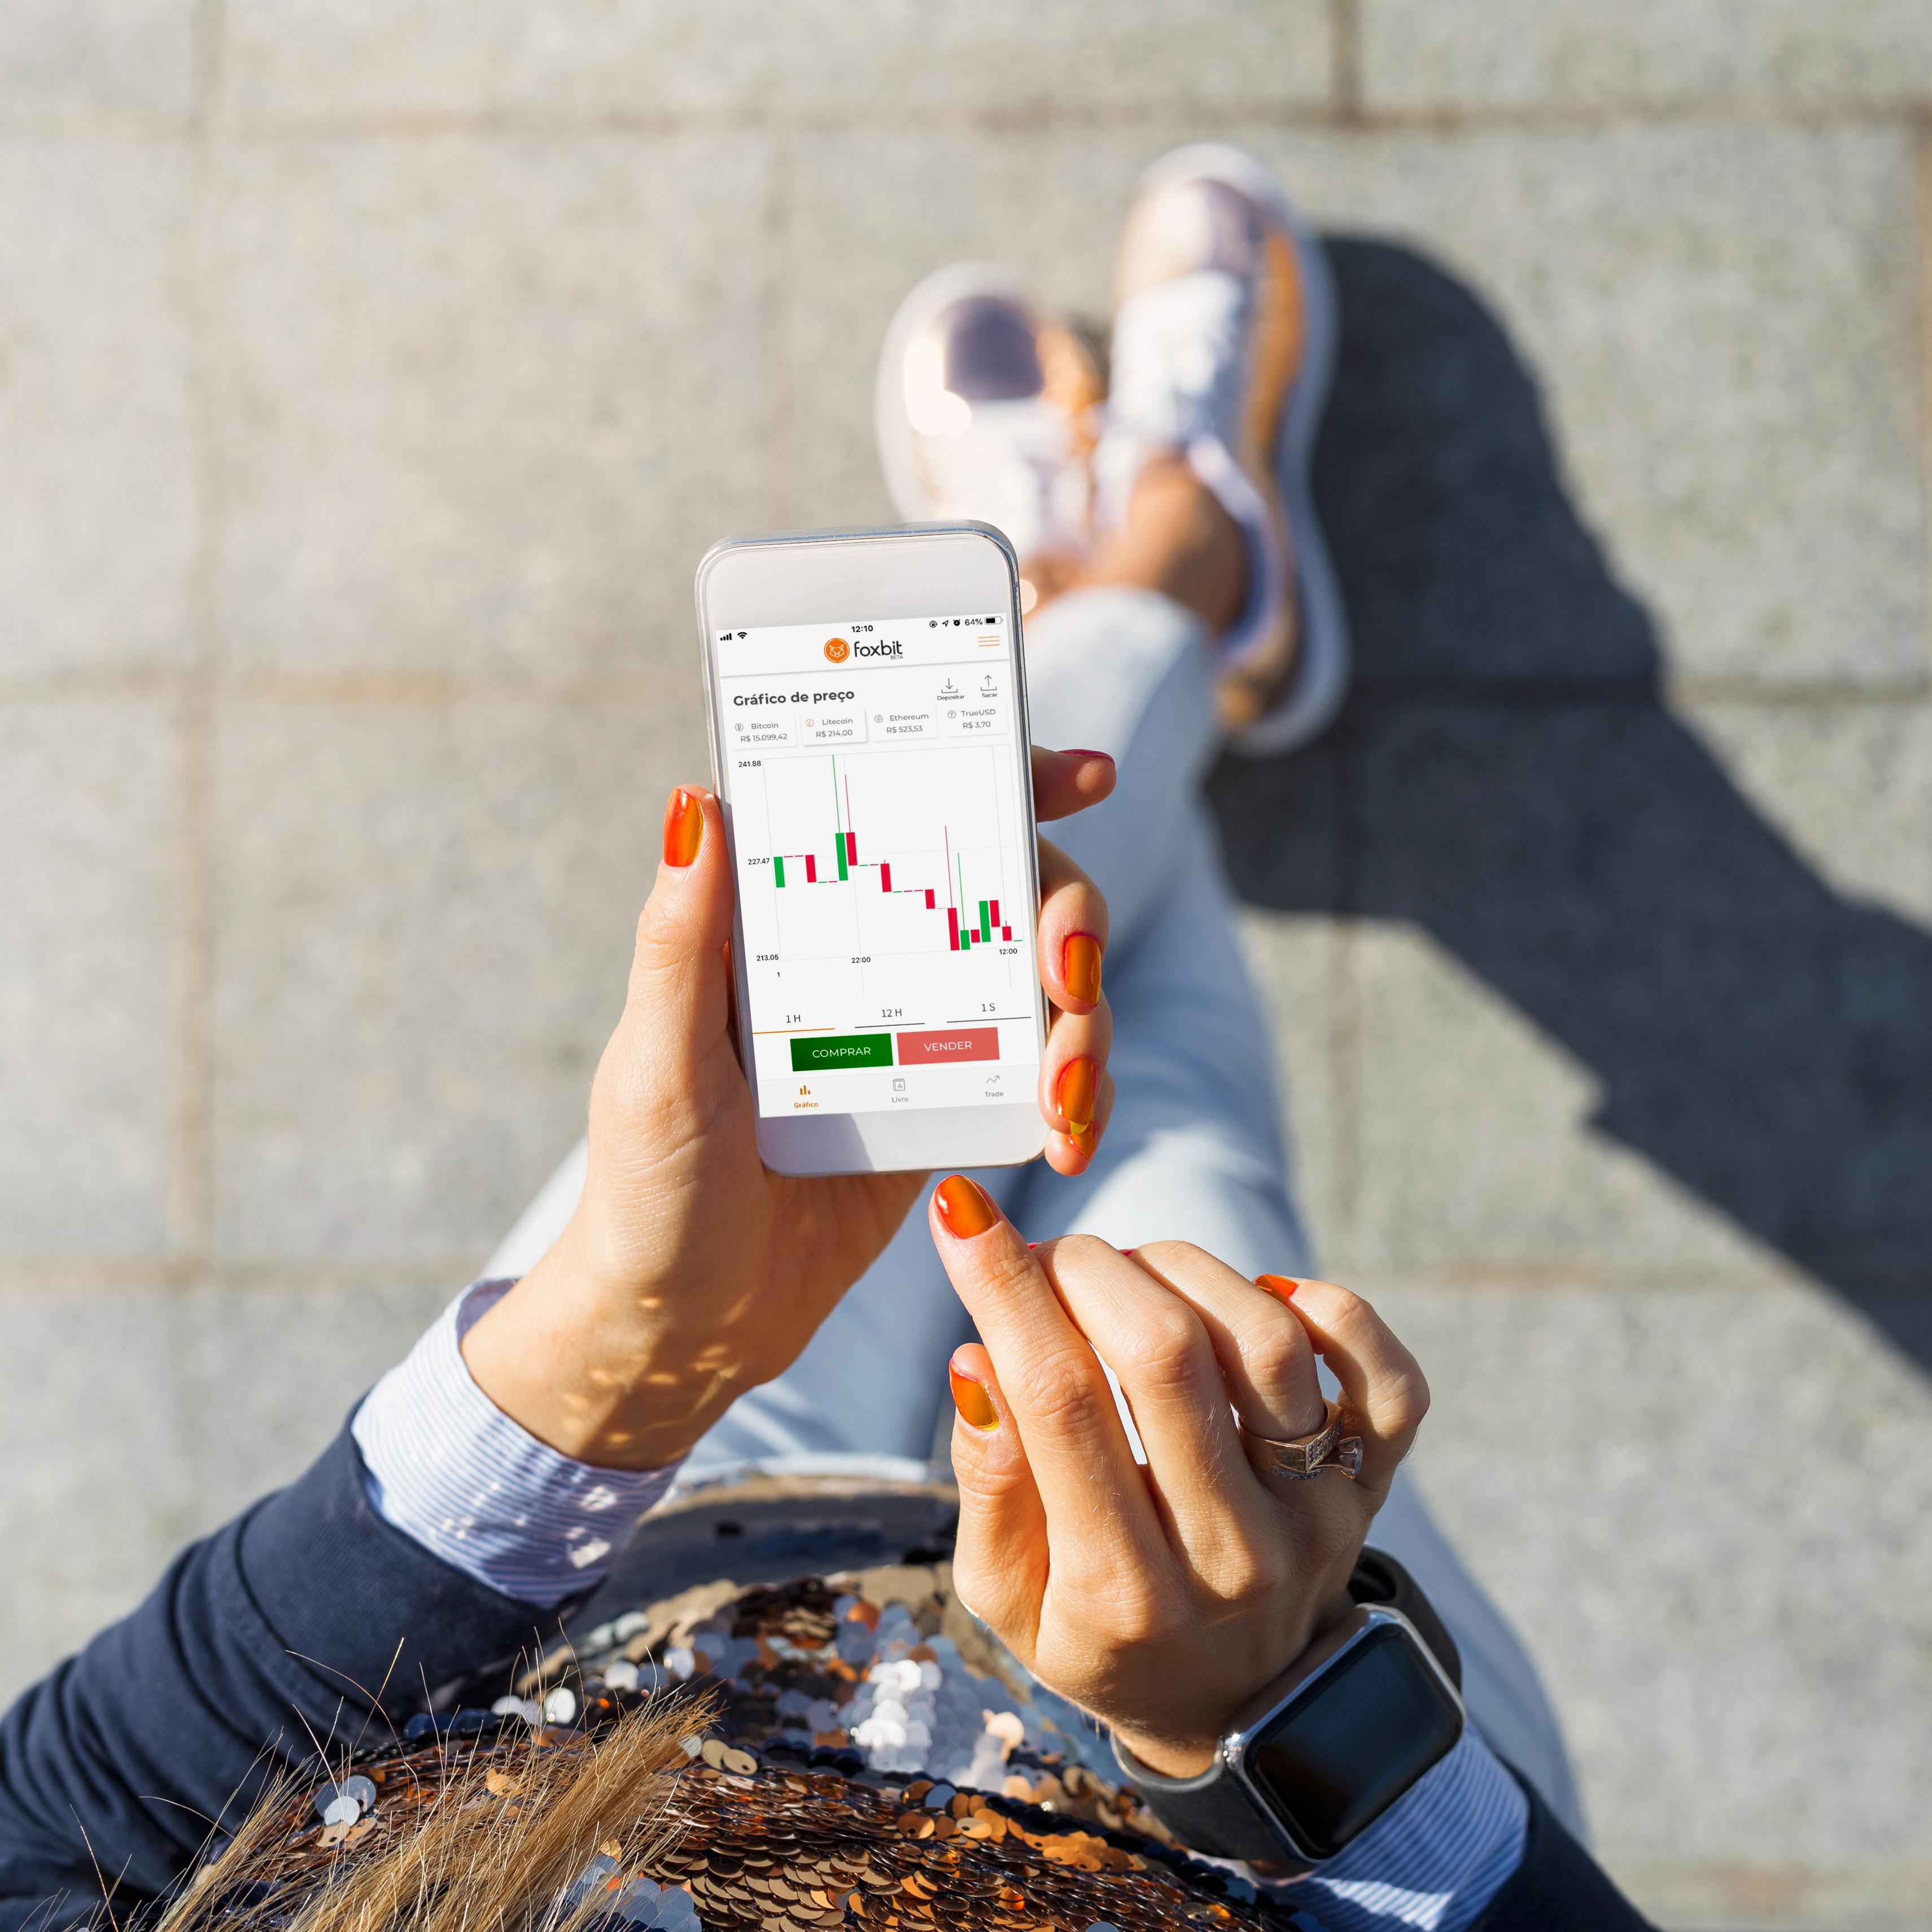 Foxbit lança aplicativo para iOS; confira nossa análise